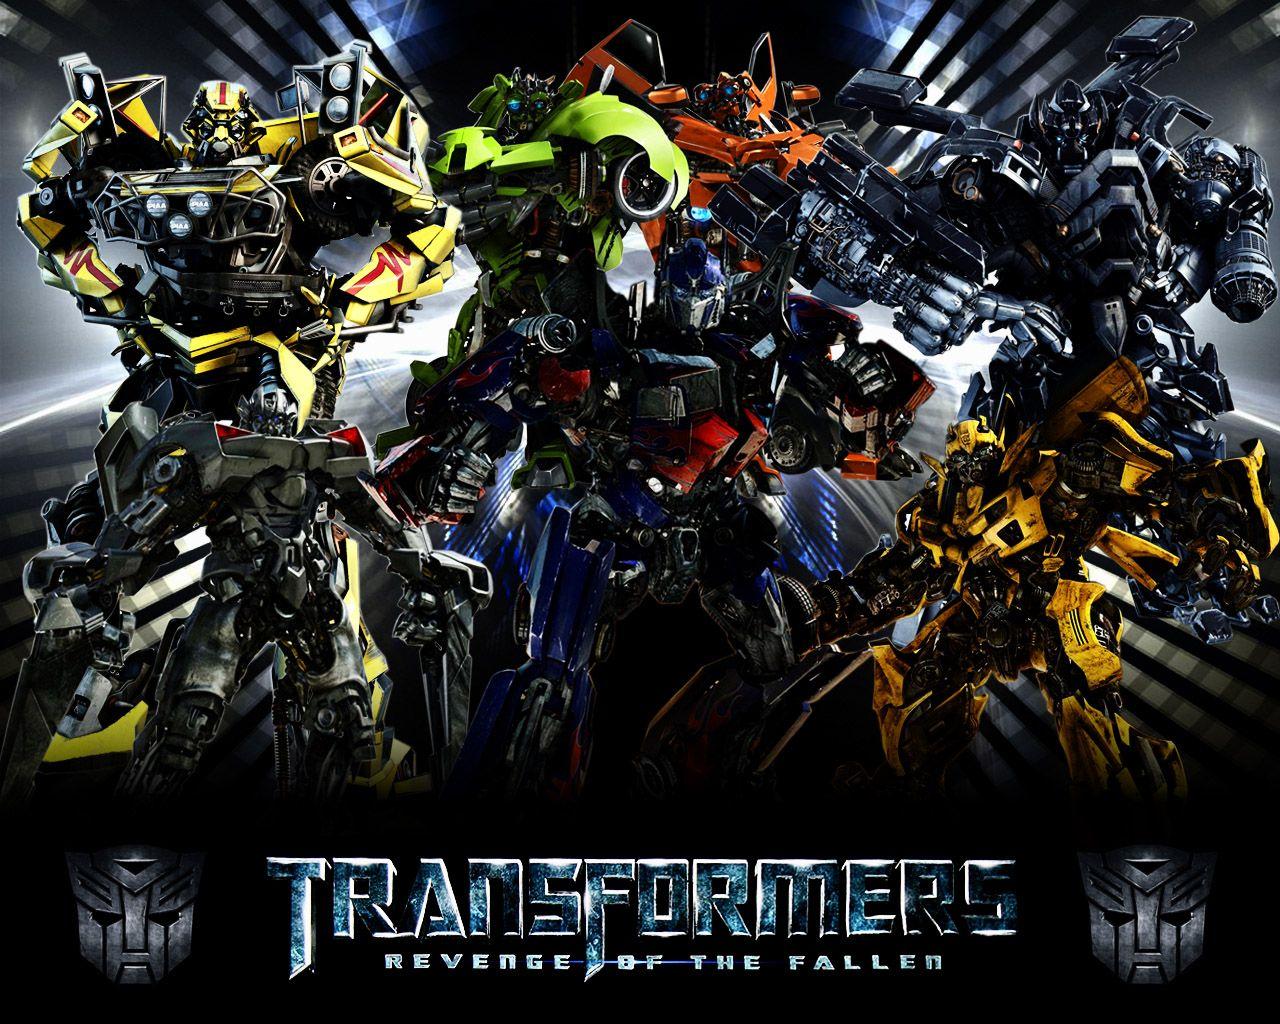 Transformer luôn là một chủ đề hot trong giới trẻ, vì vậy tại sao bạn không trang trí màn hình máy tính của mình với những hình nền Transformer 4K đẹp mắt và sáng tạo? Với hình ảnh rõ nét và đầy màu sắc, bạn sẽ cảm thấy hạnh phúc và đầy niềm tự hào khi sử dụng màn hình máy tính của mình.